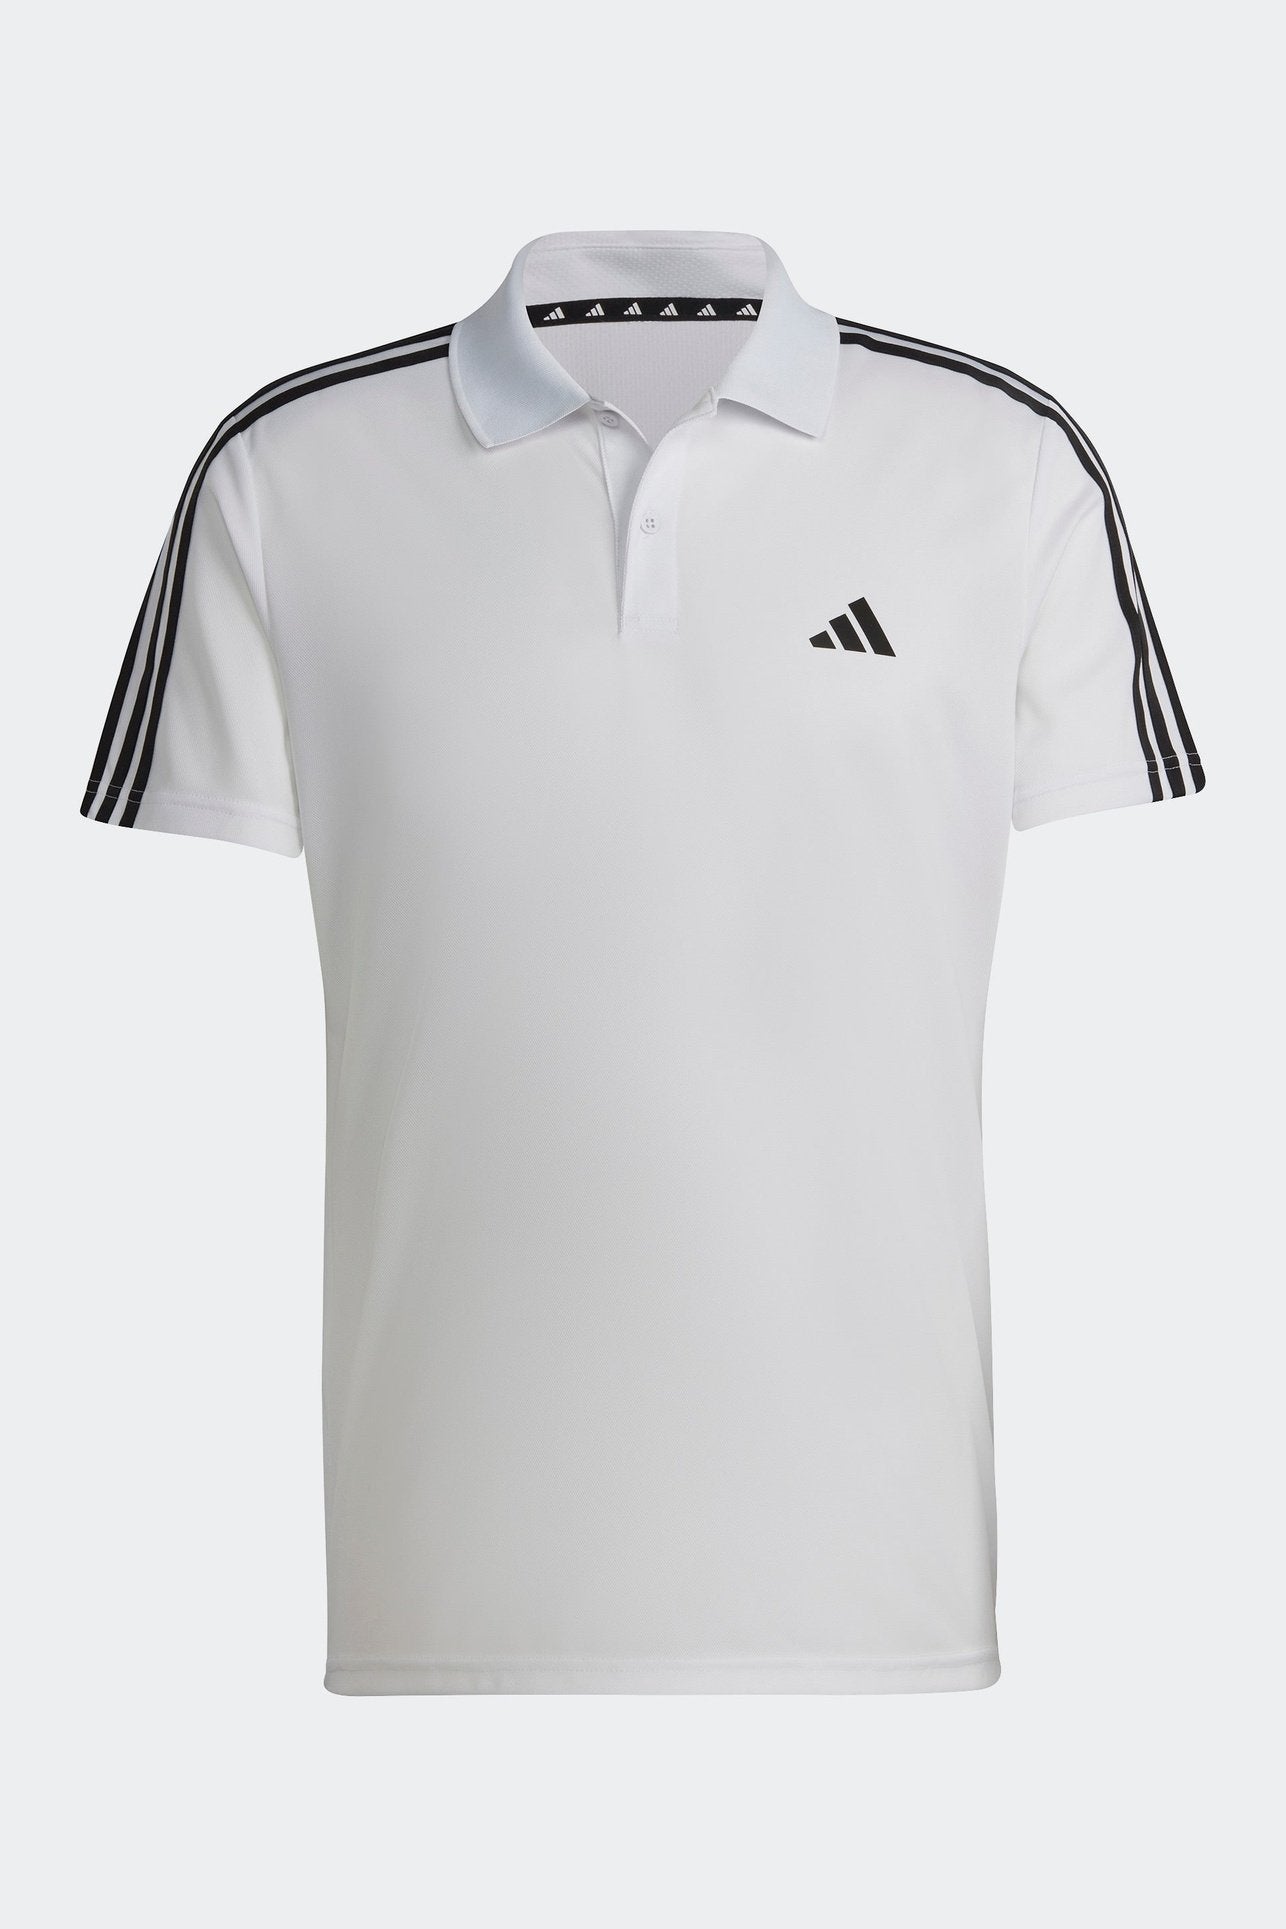 חולצת פולו לגברים TRAIN ESSENTIALS PIQUÉ 3-STRIPES בצבע לבן ושחור